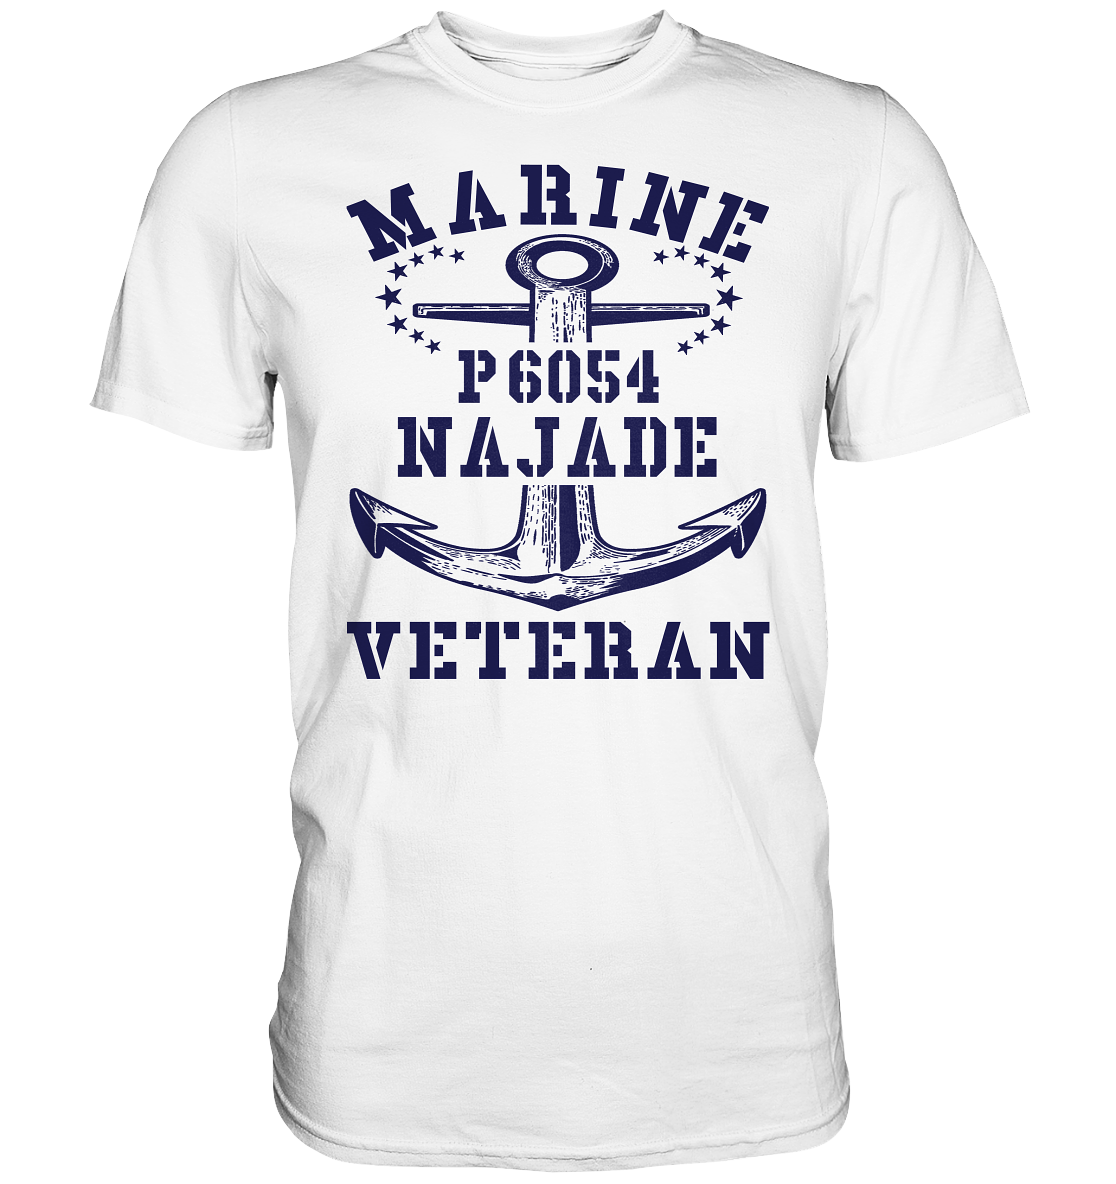 U-Jagdboot P6054 NAJADE Marine Veteran - Premium Shirt